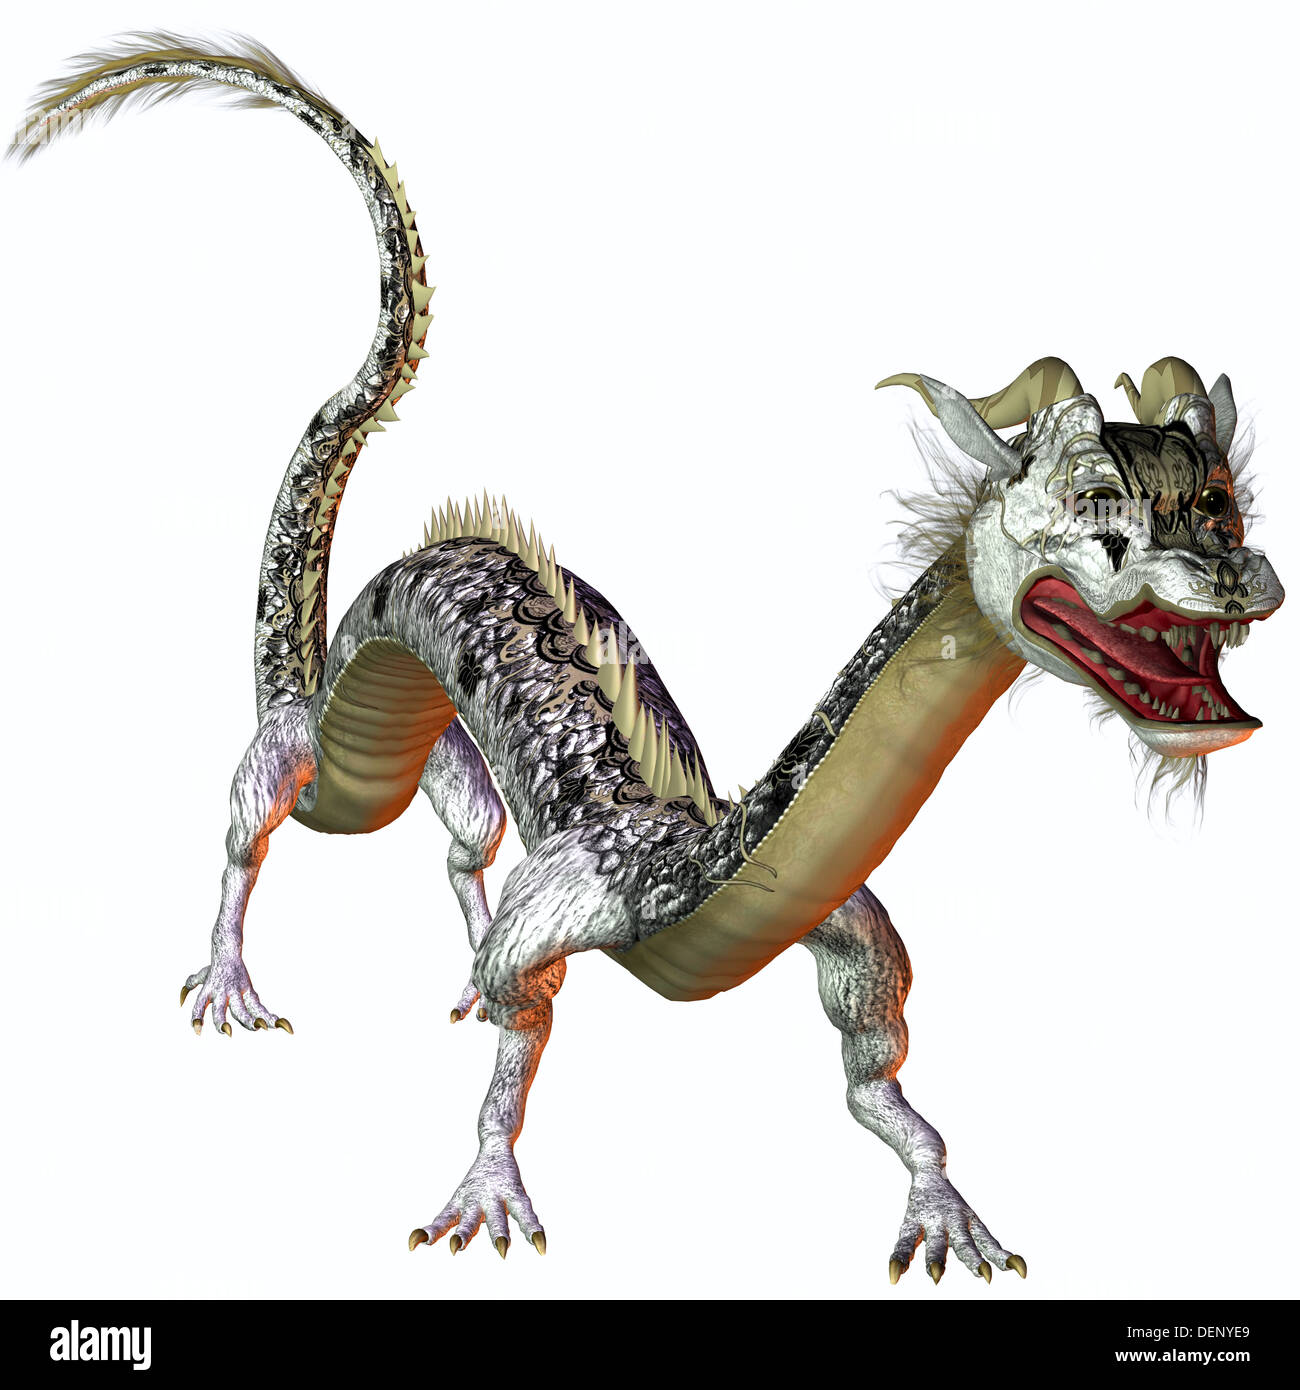 Una criatura de la mitología y fantasía el dragón es un feroz monstruo con cuernos y dientes grandes. Foto de stock